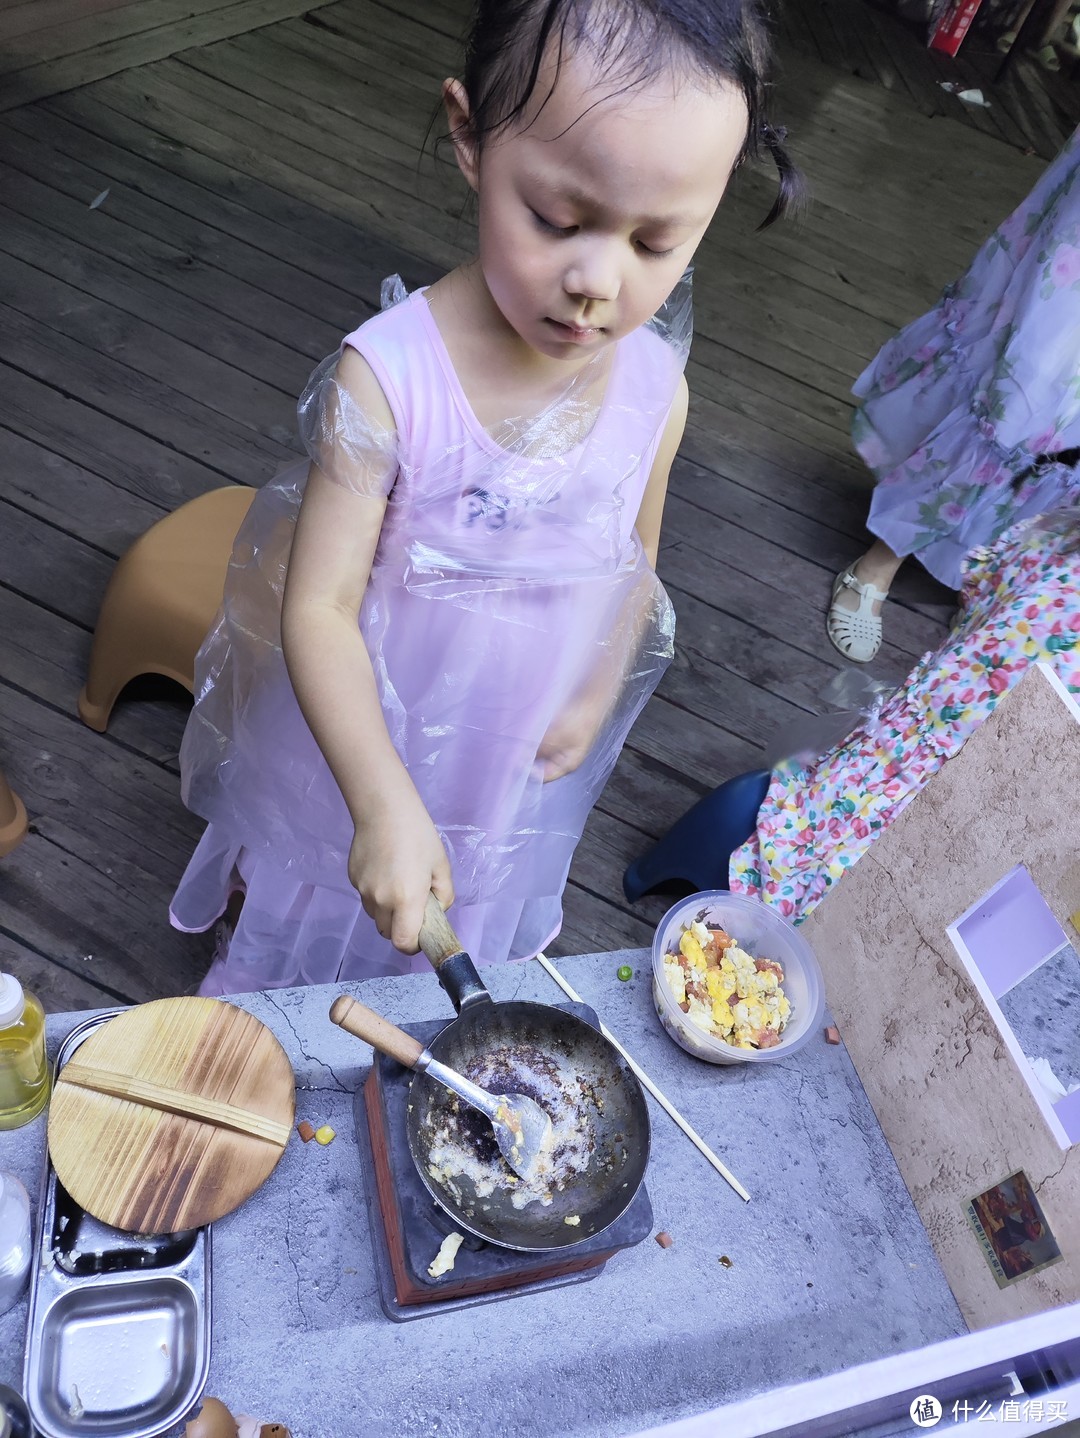 孩子用迷你炒锅在做饭